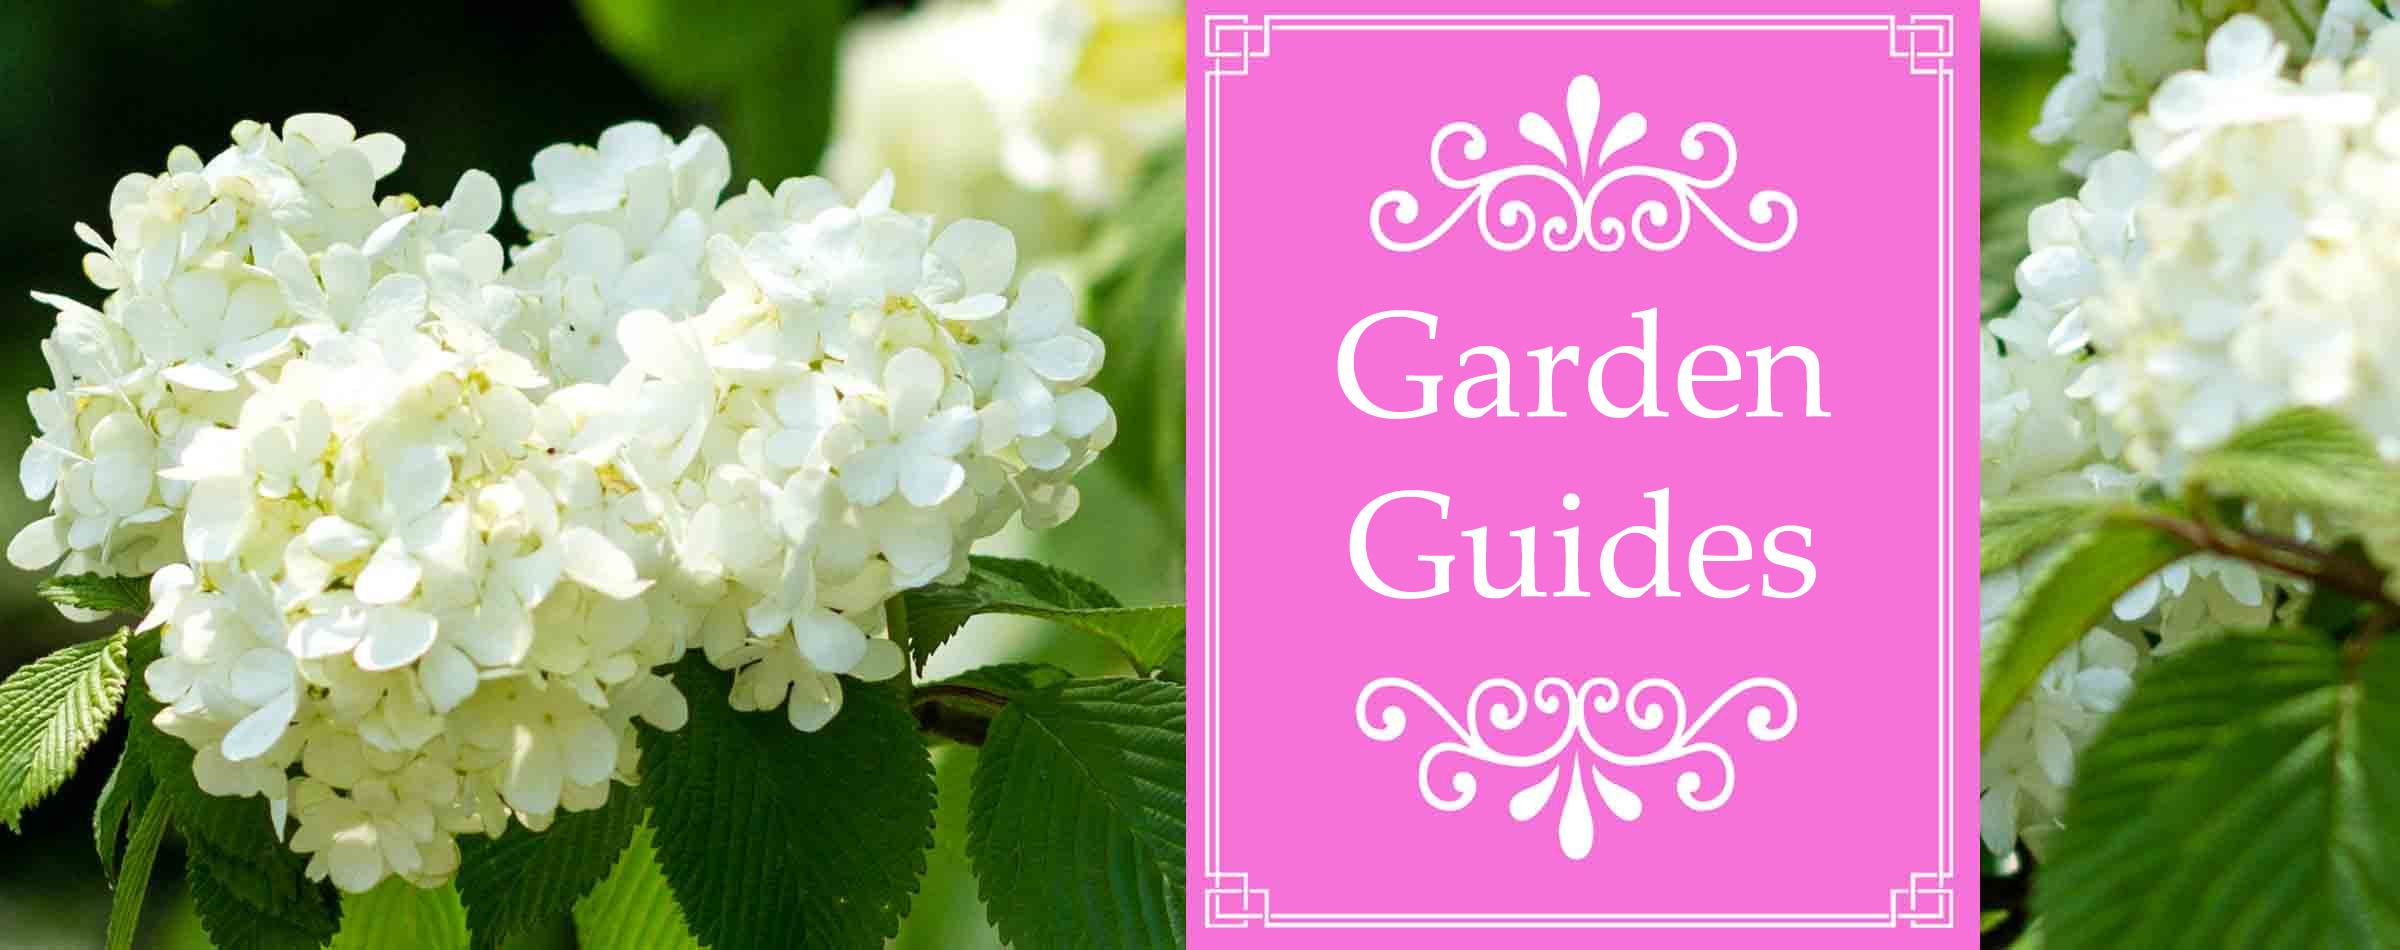 Garden Guides